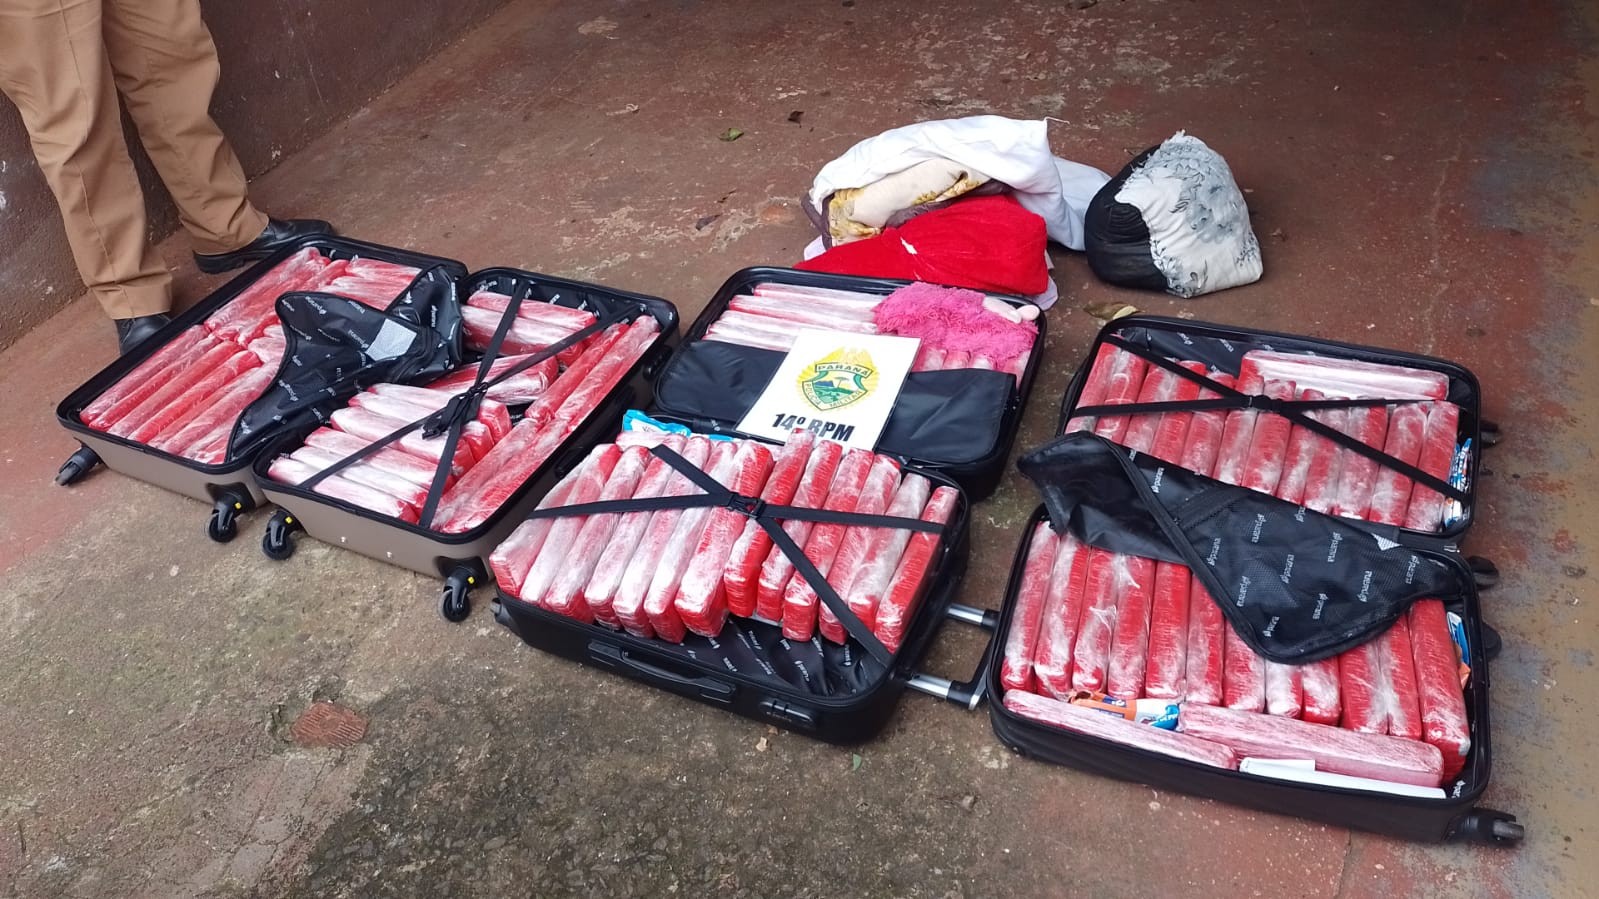 Após denúncia de 'cheiro de maconha', jovem é presa e duas adolescentes são apreendidas com droga escondida em malas na rodoviária de Foz do Iguaçu